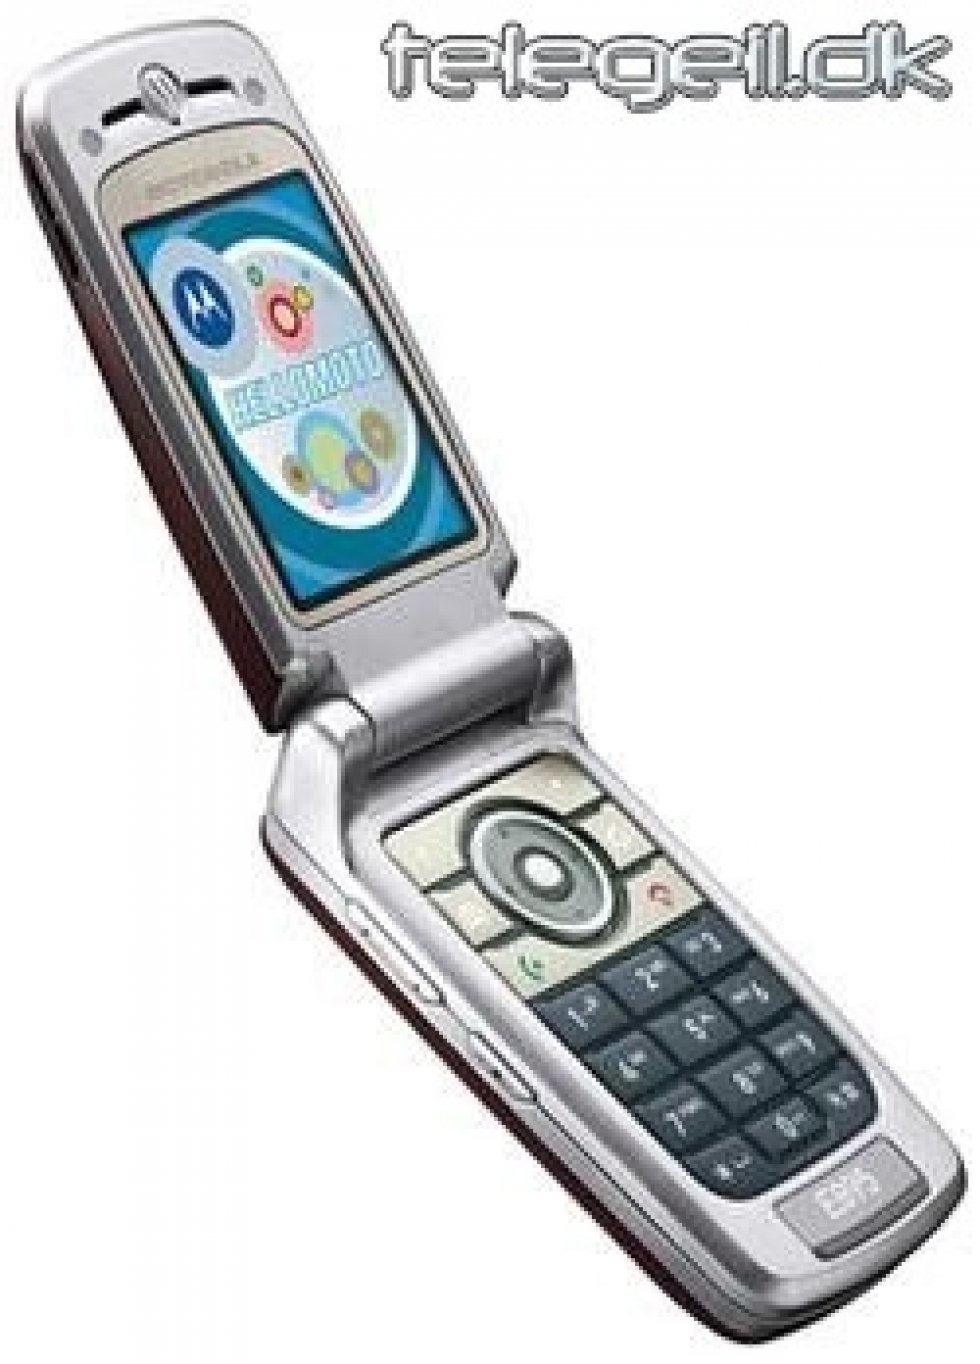 Linux baseret mobil fra Motorola